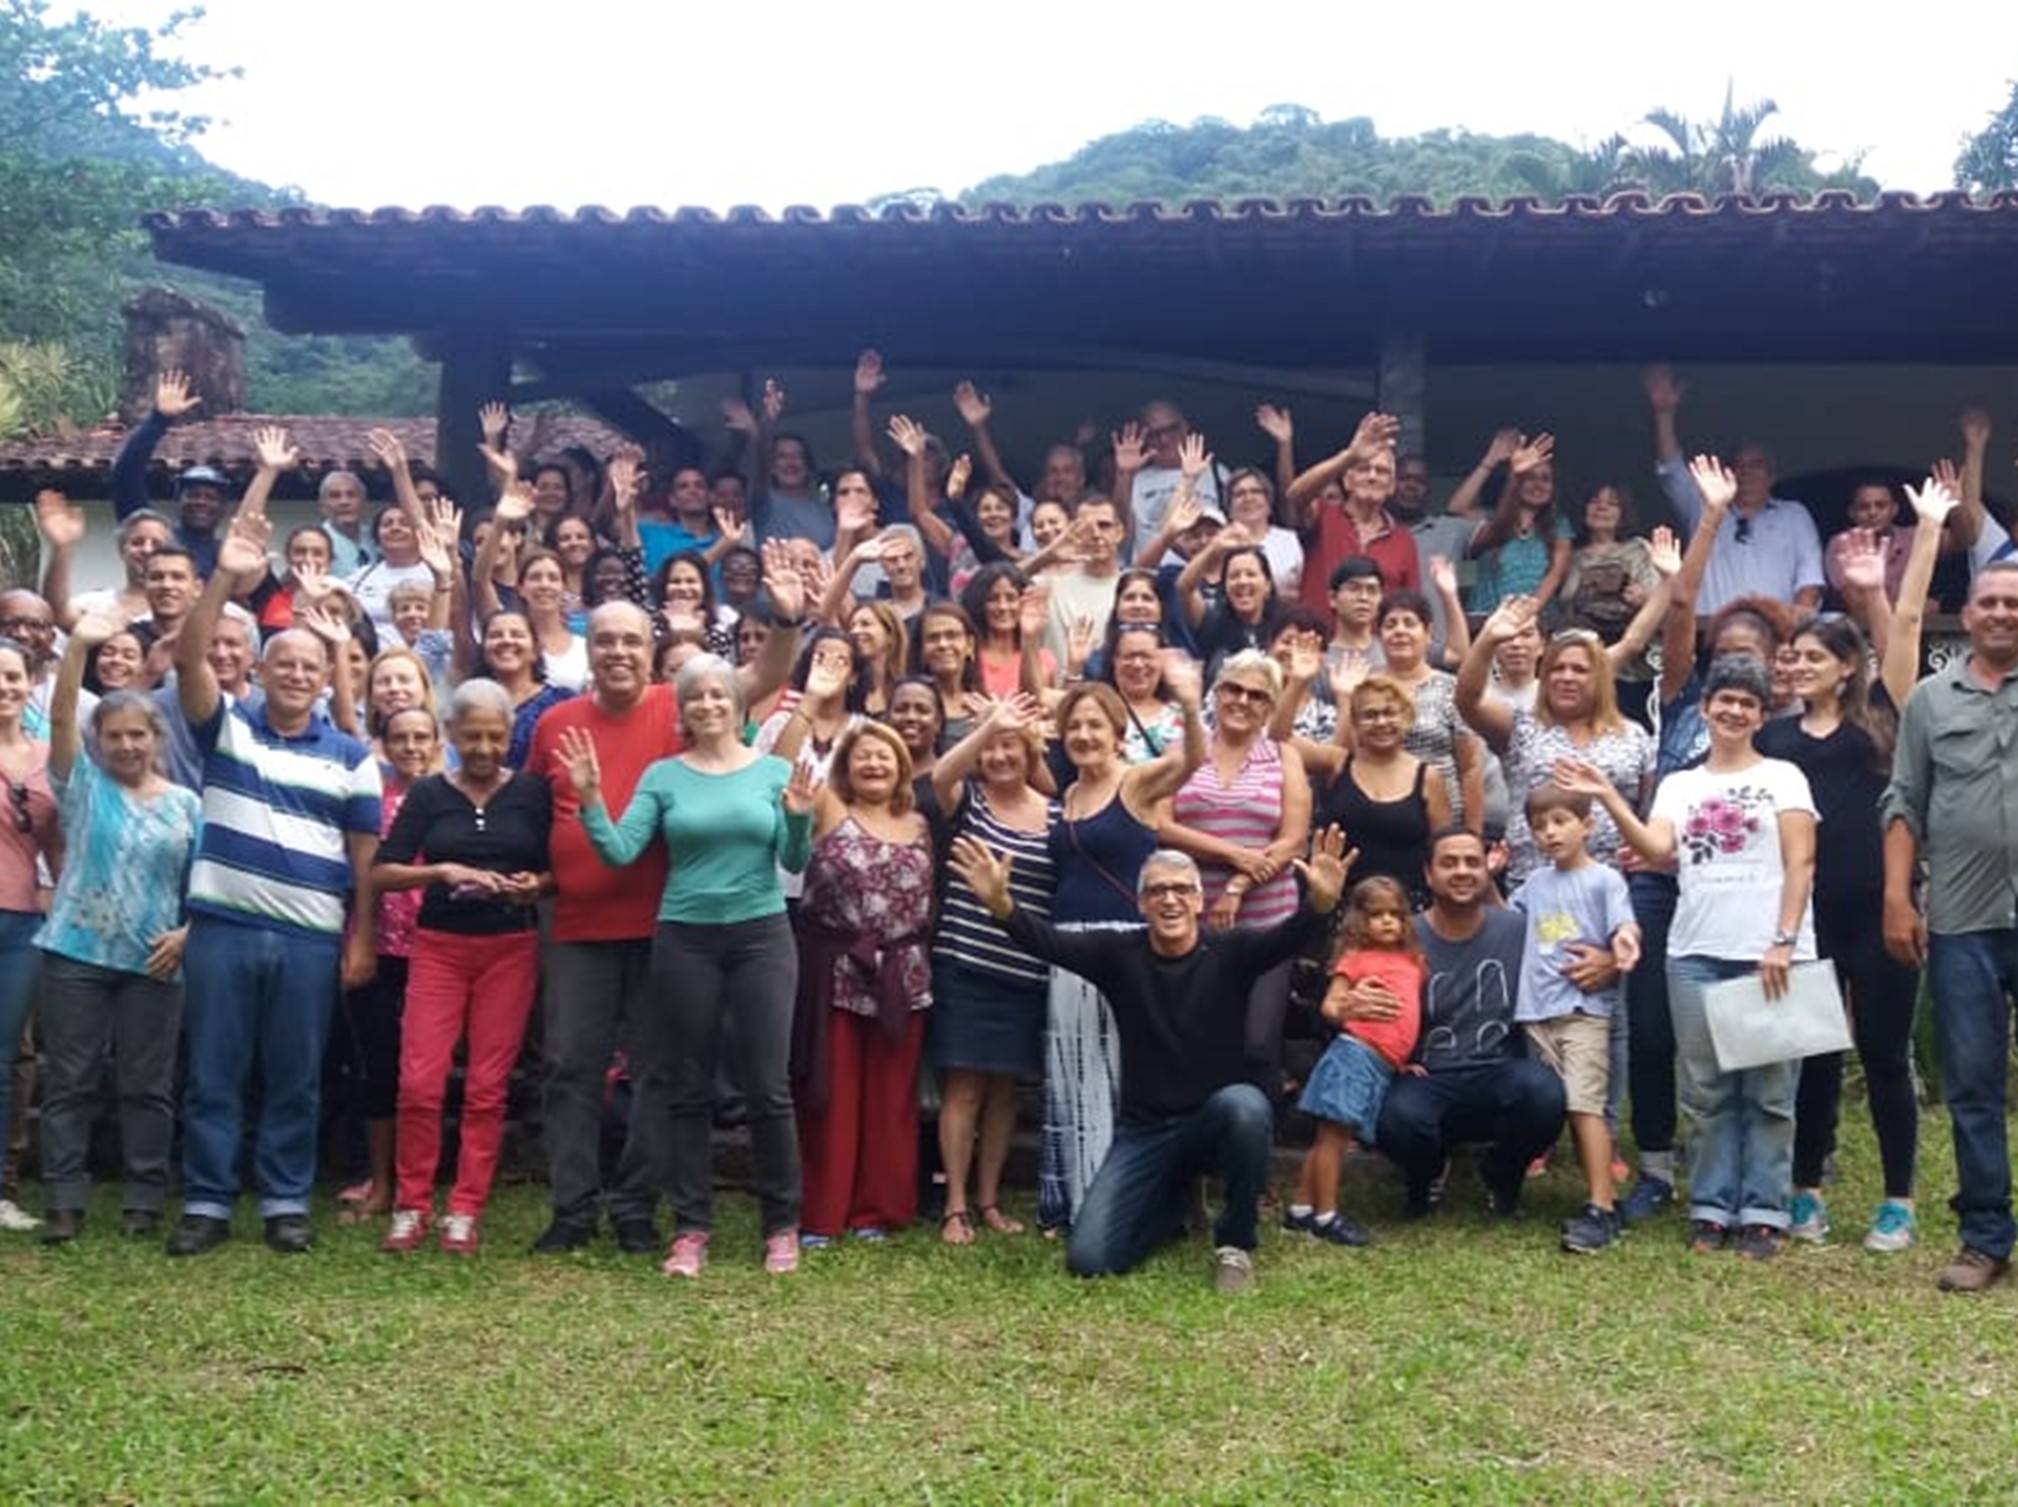 Culto reúne 110 pessoas na Fazenda Messiânica Silva Jardim (RJ)